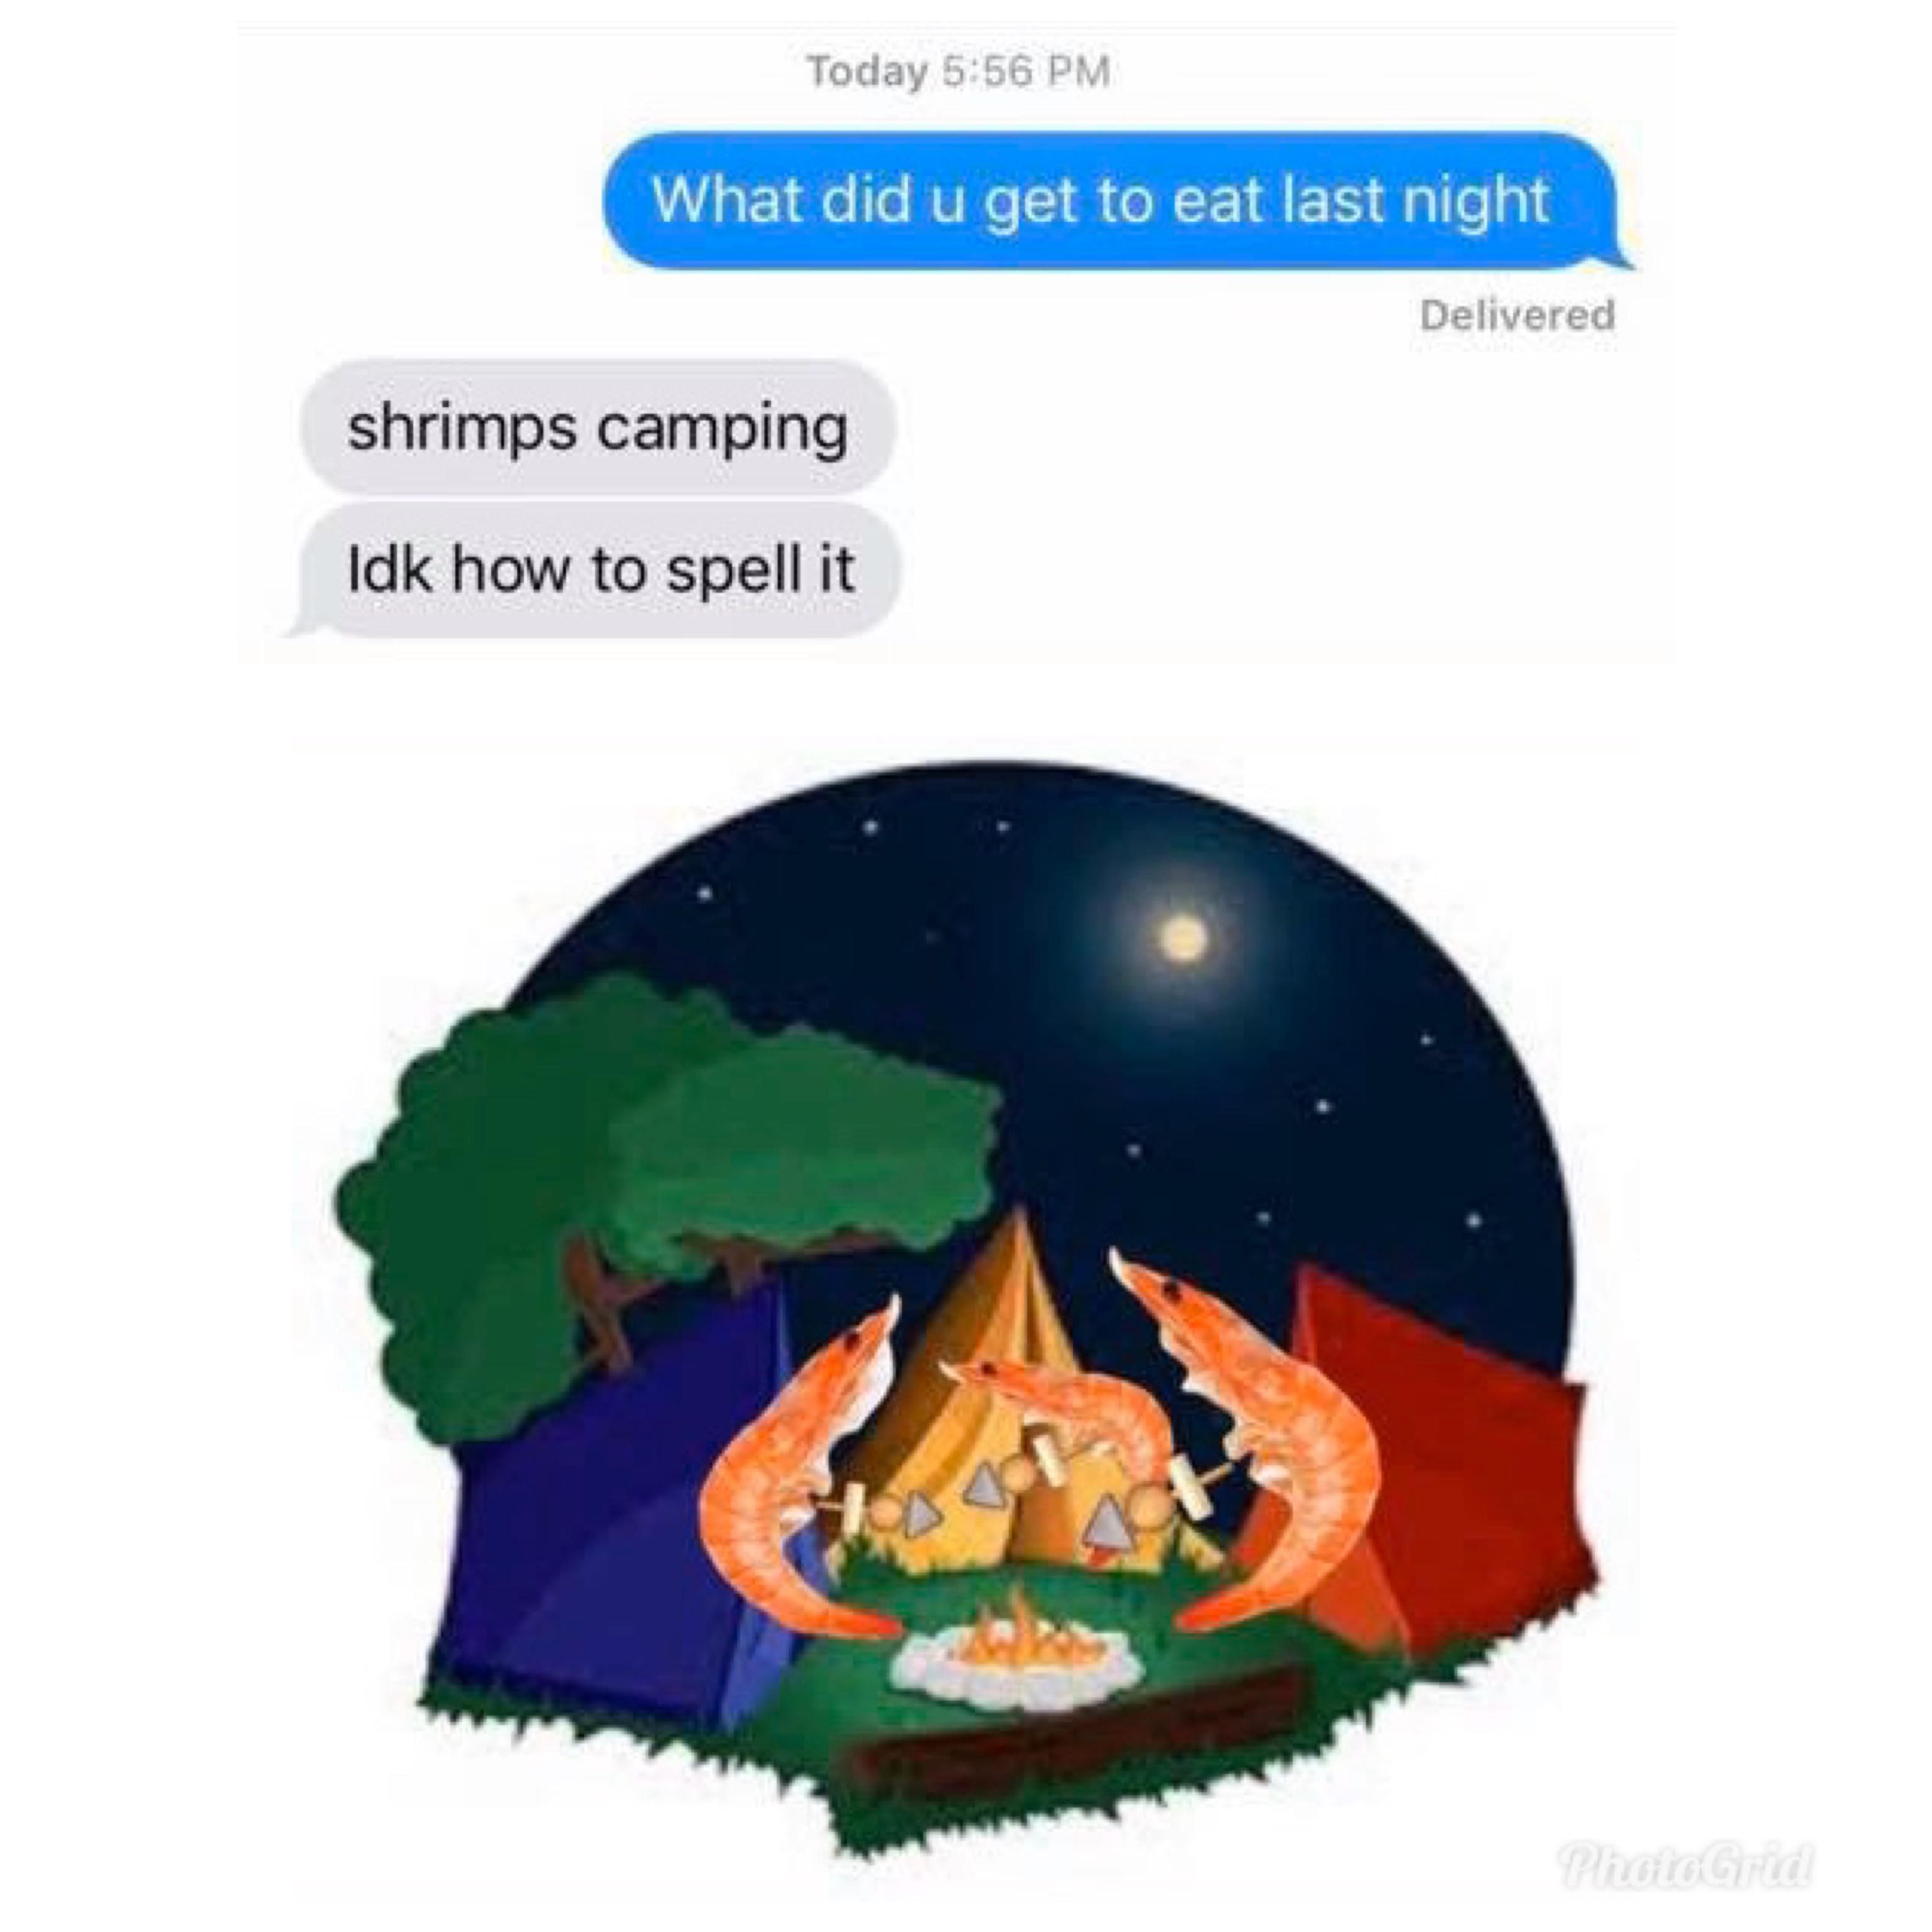 Shrimps camping